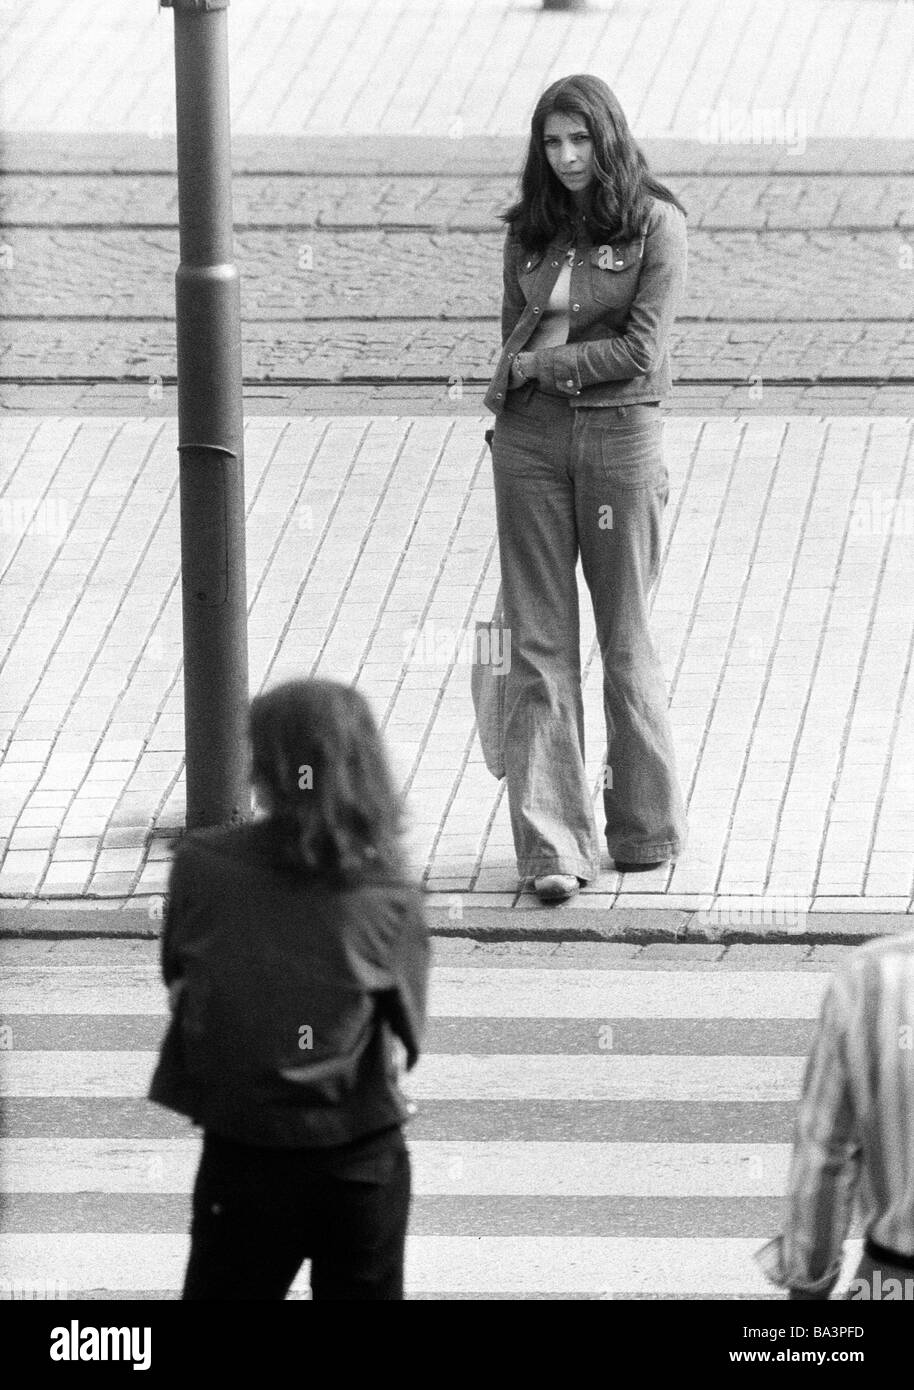 Negli anni settanta, foto in bianco e nero, persone giovane ragazza sulla strada, jeans tuta, in attesa di una zebra crossing, di età compresa tra i 18 e i 22 anni Foto Stock